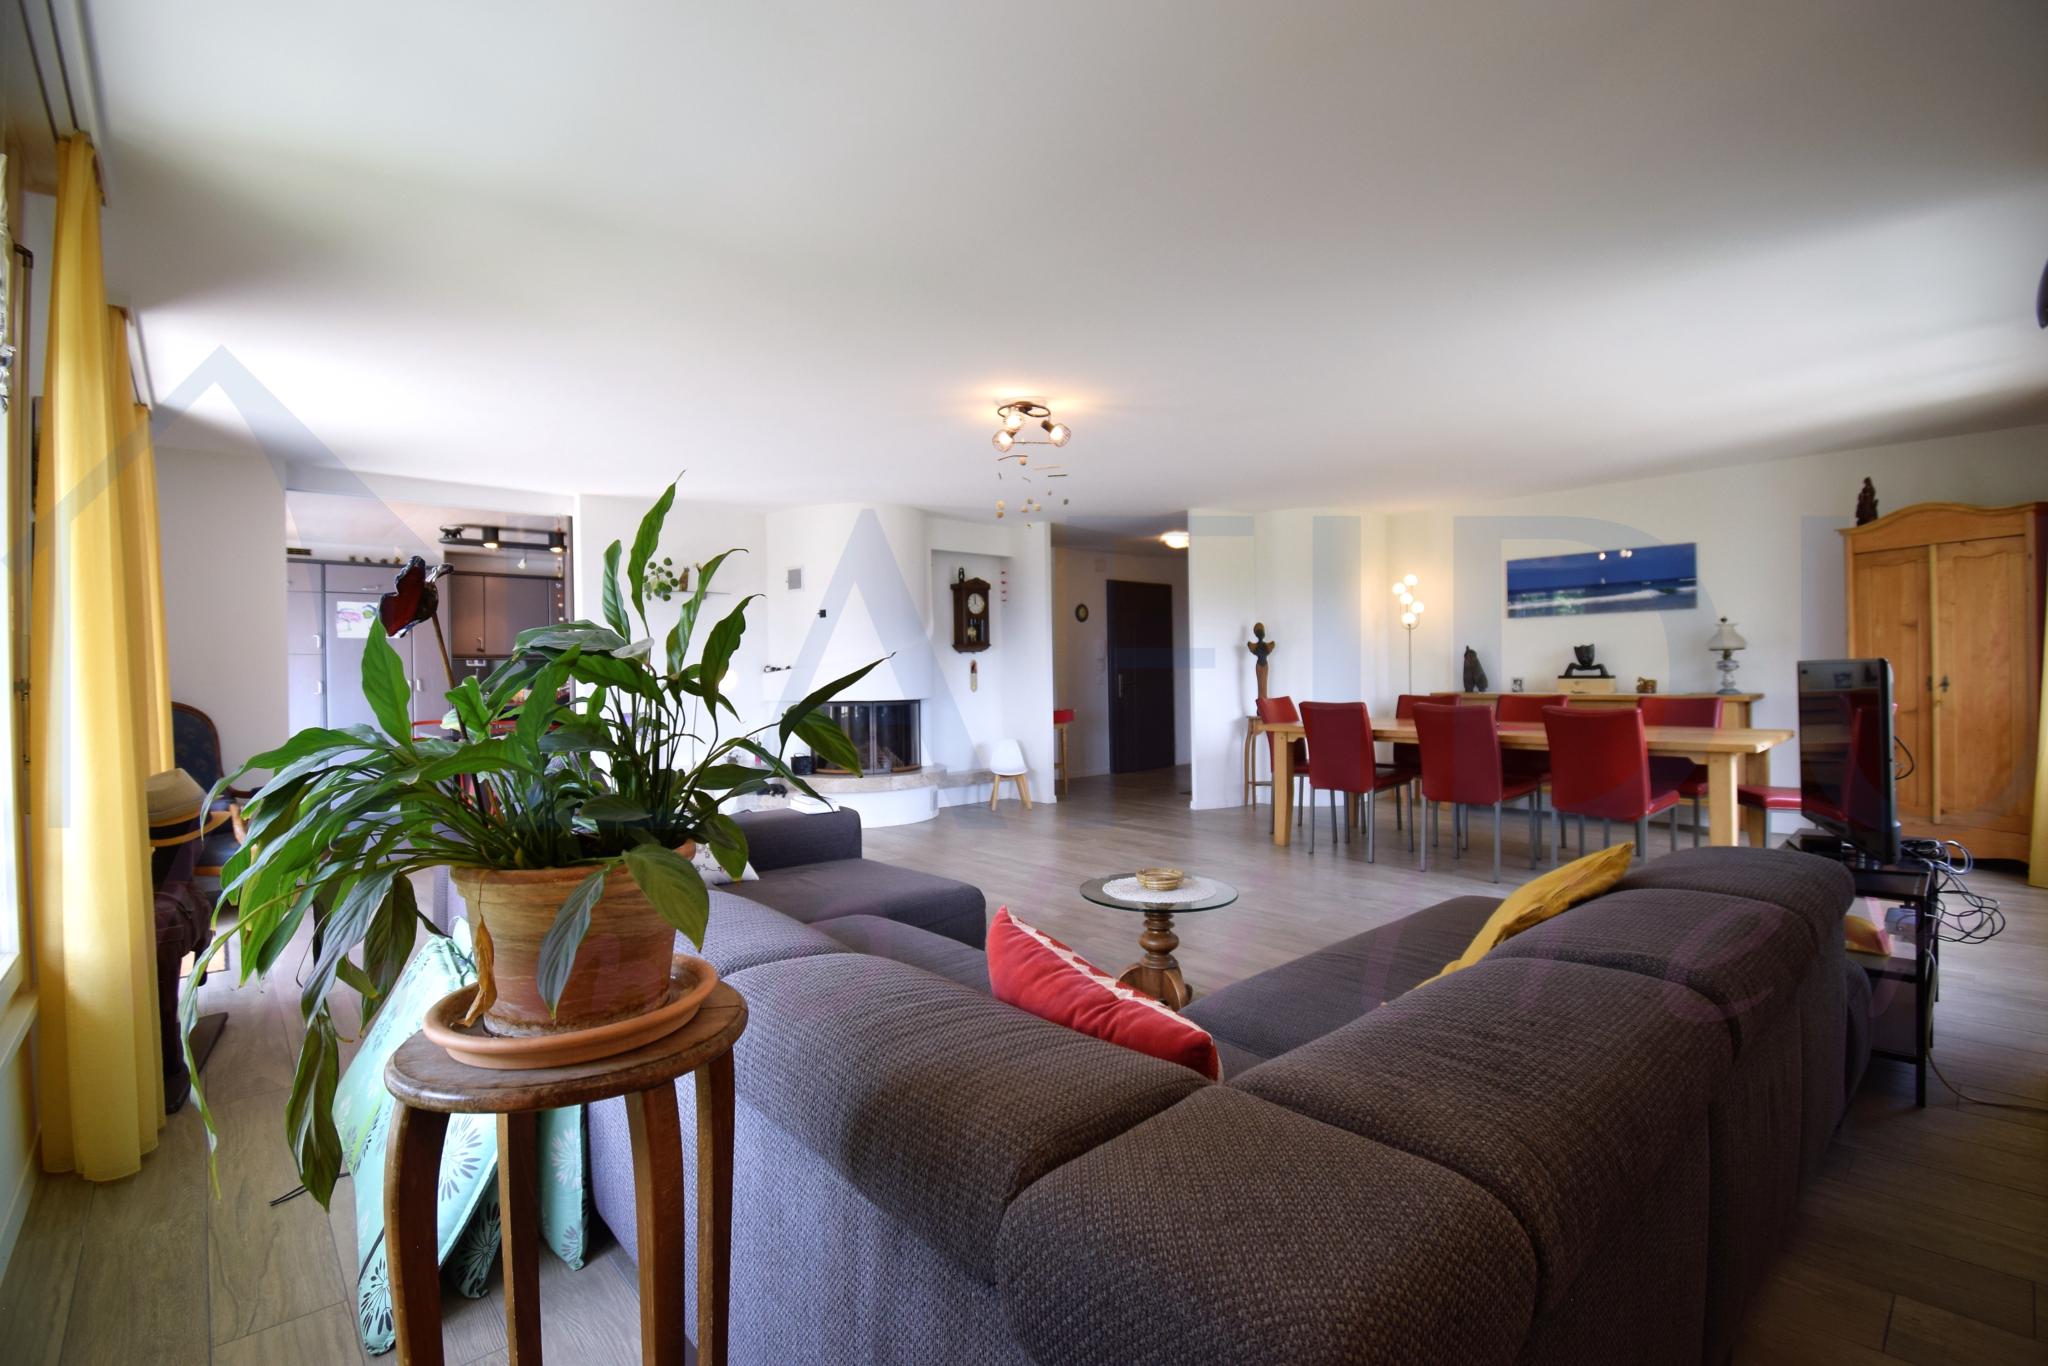 VENDU - Superbe appartement spacieux de 5.5 pces avec vue dégagée